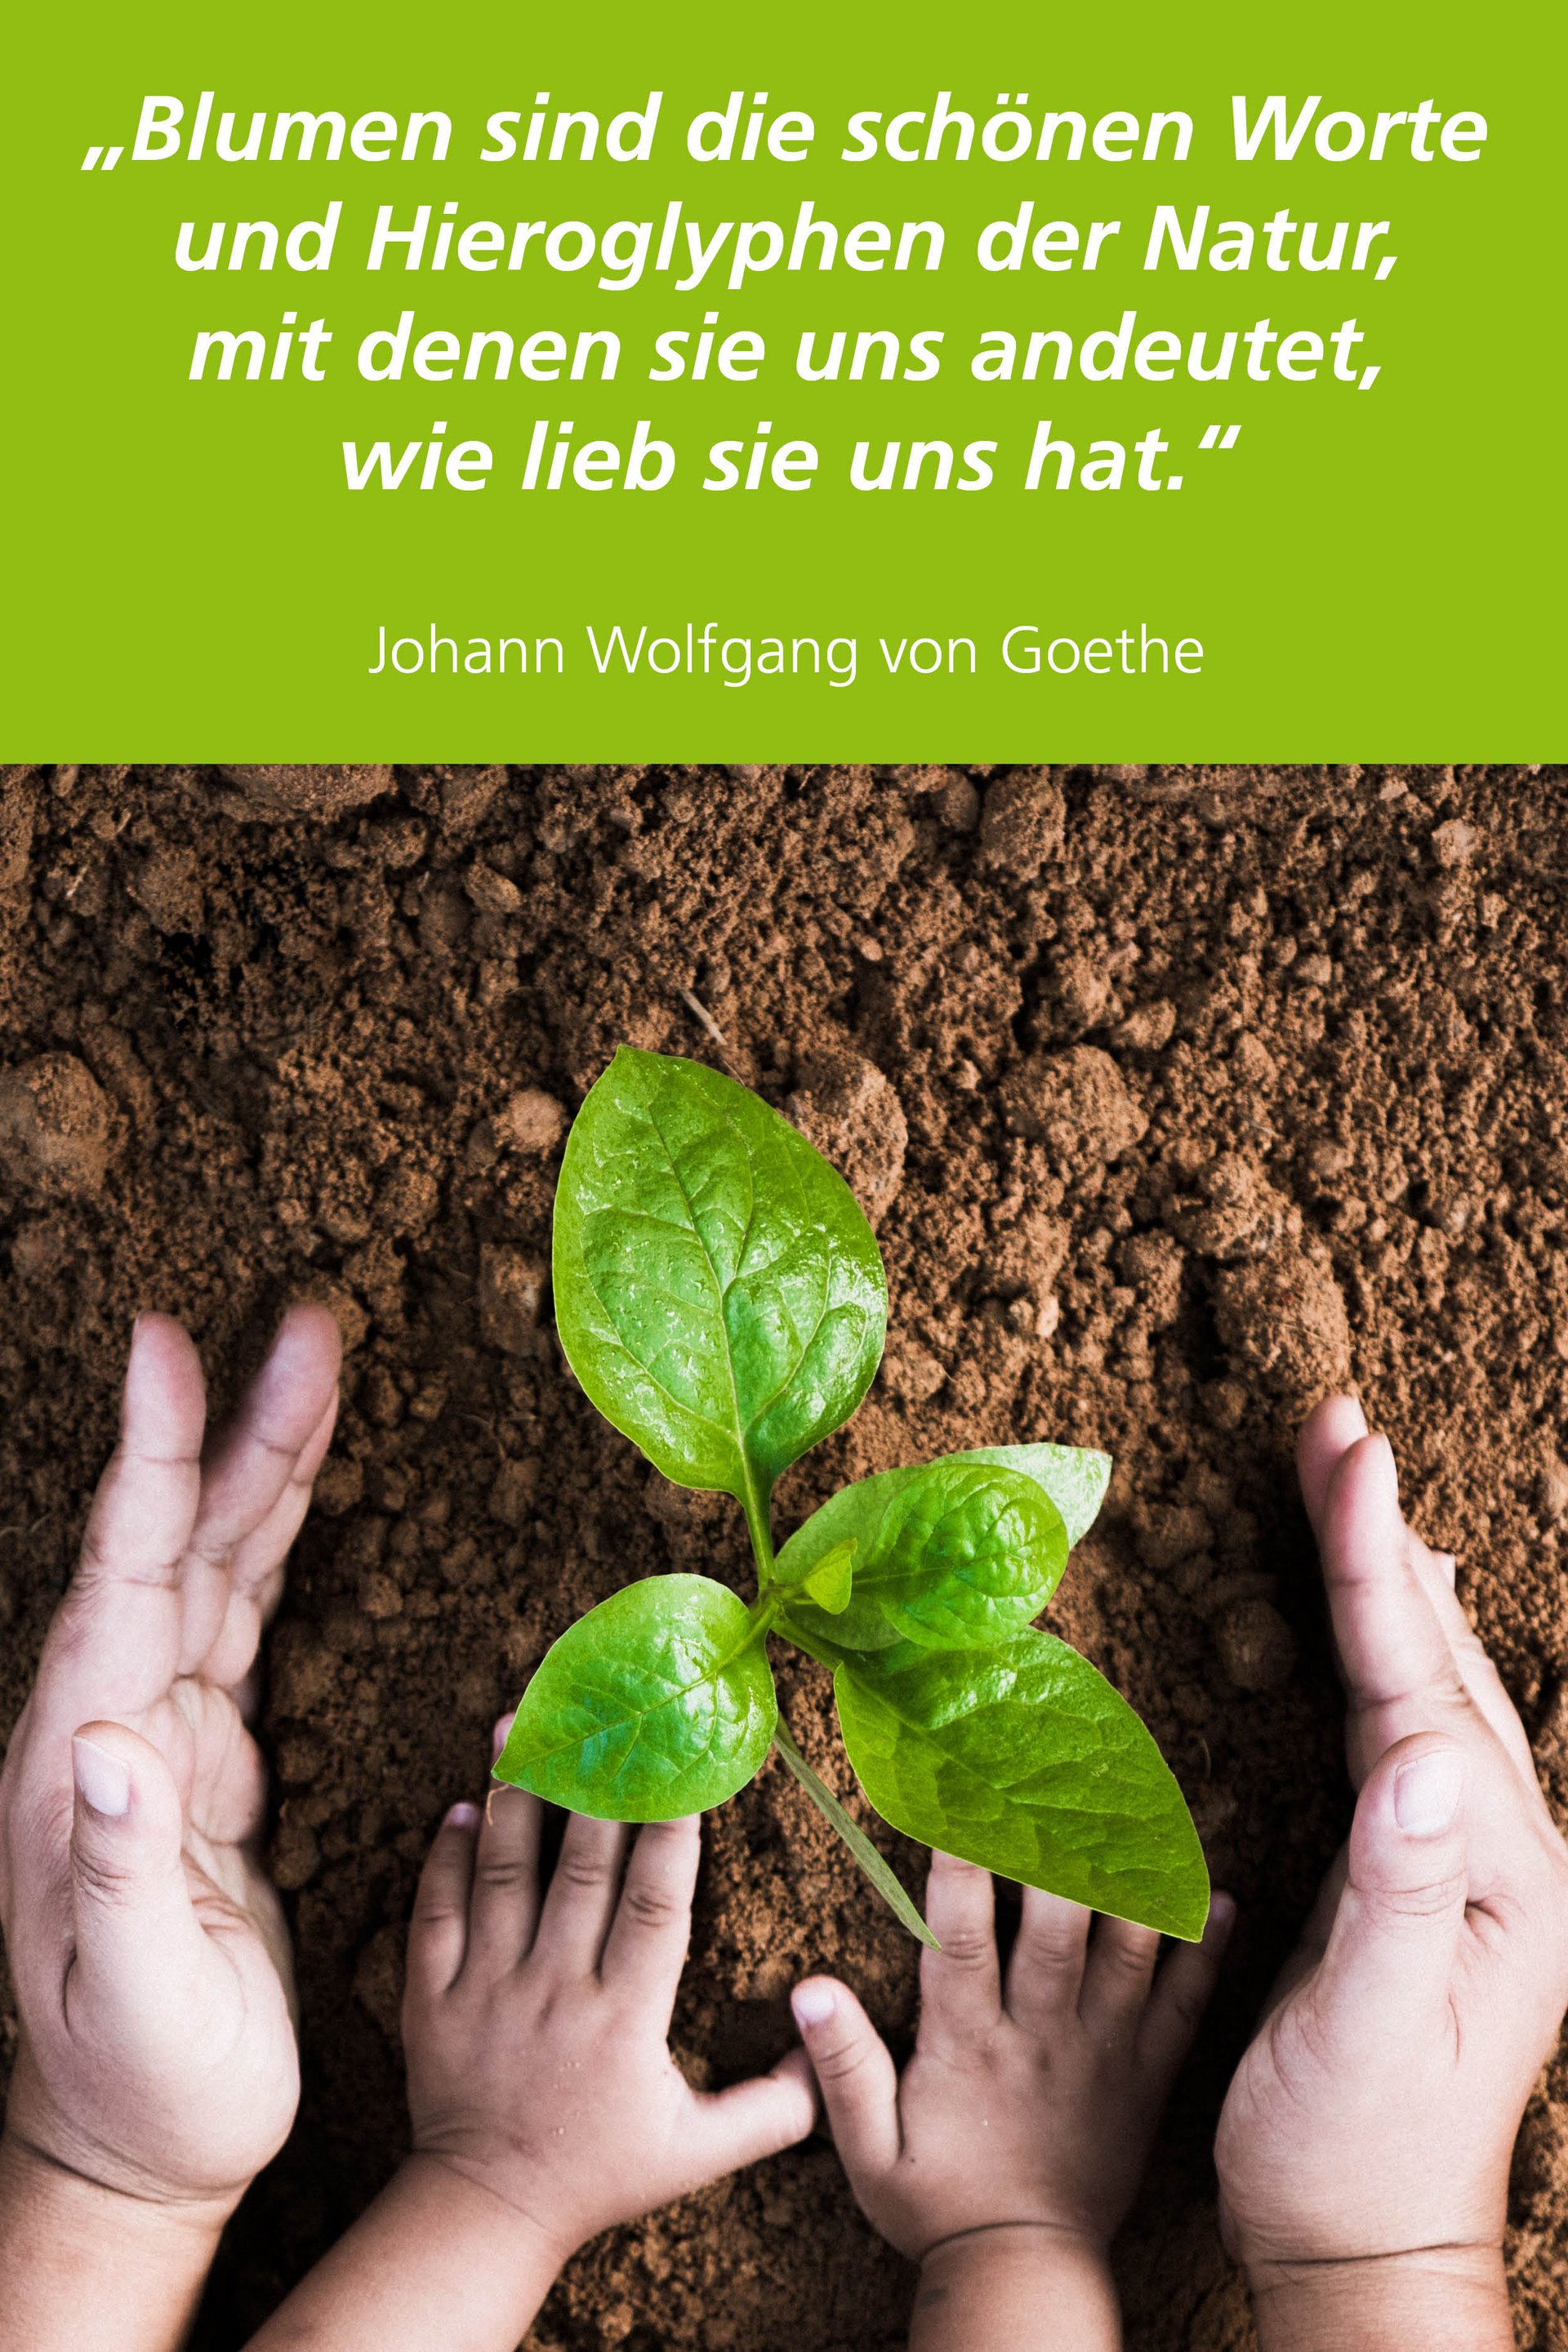 Bild mit Baumsetzling und Zitat von Johann Wolfgang von Goethe: "Blumen sind die schönen Worte und Hieroglyphen der Natur, mit denen sie uns andeutet, wie lieb sie uns hat."